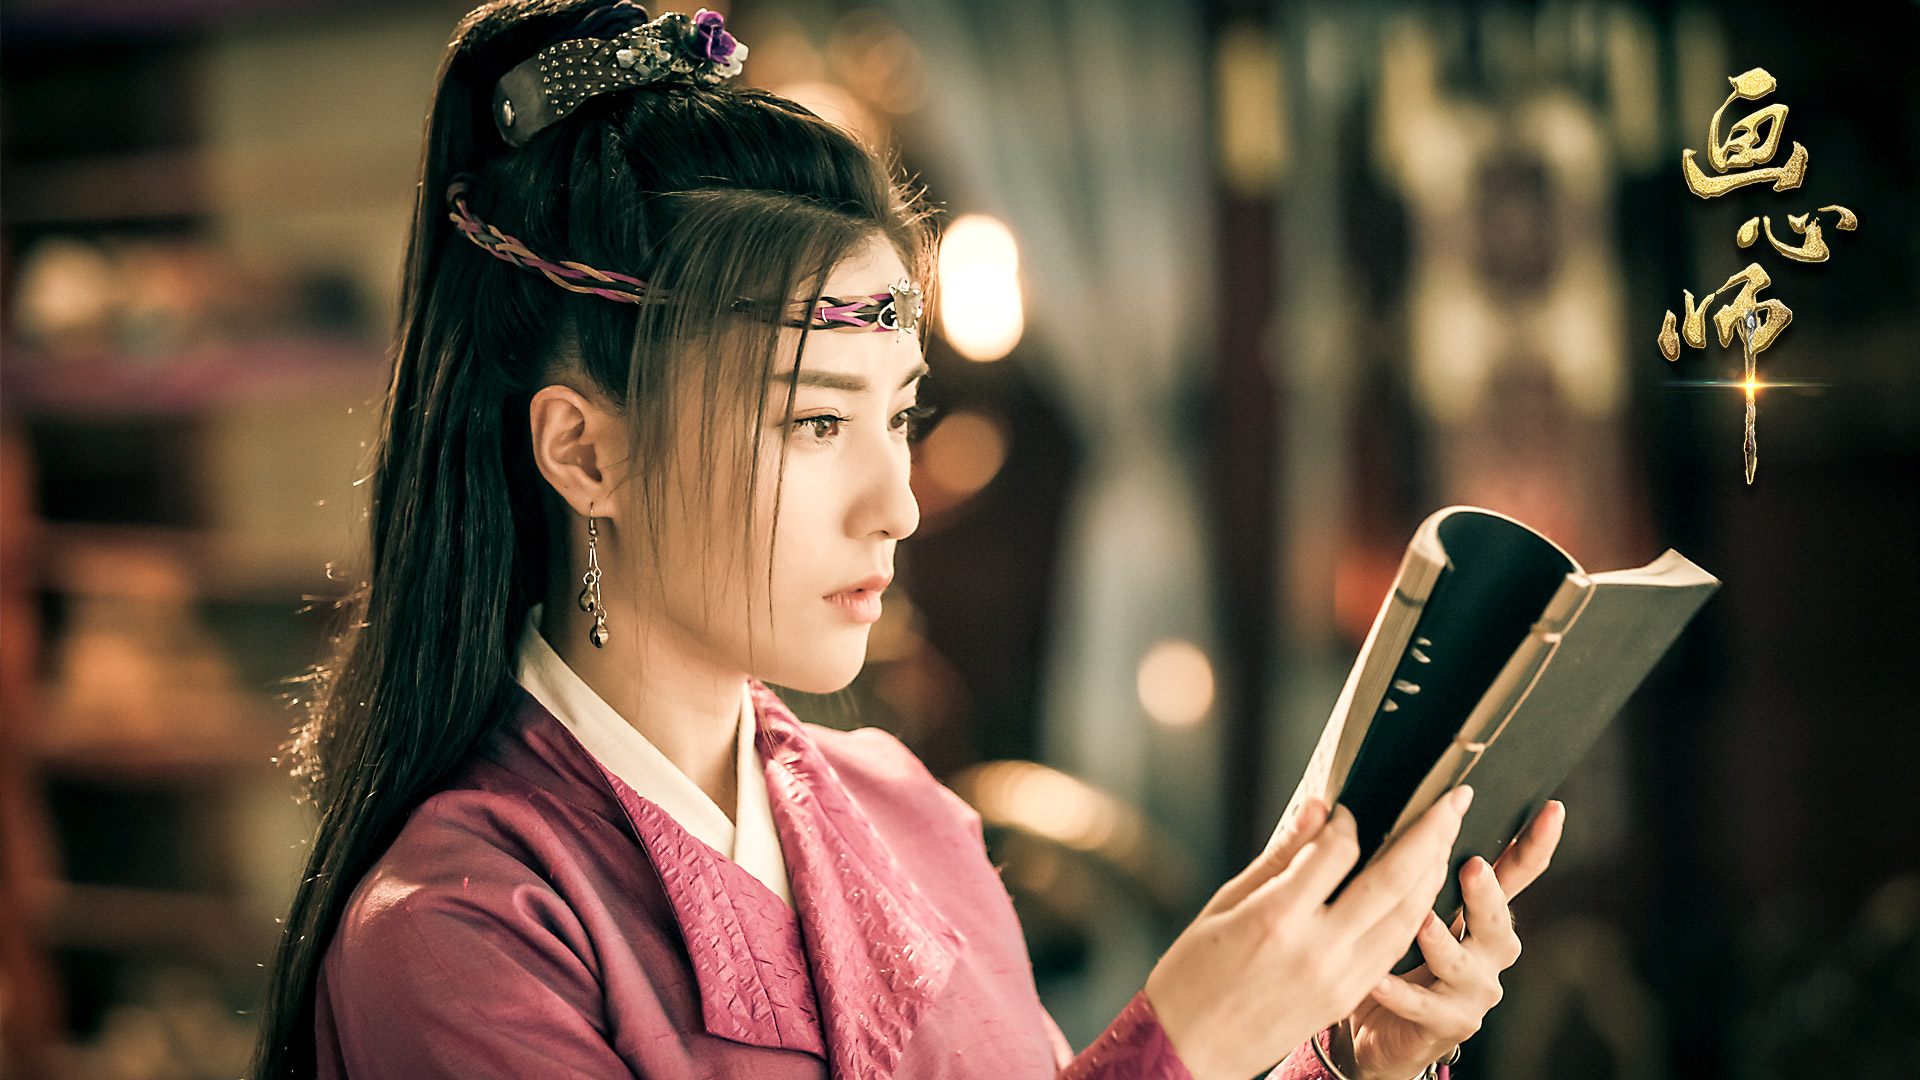 搜狐视频今夏古装玄幻大戏《画心师》已于4月24日正式上线,该剧由知名